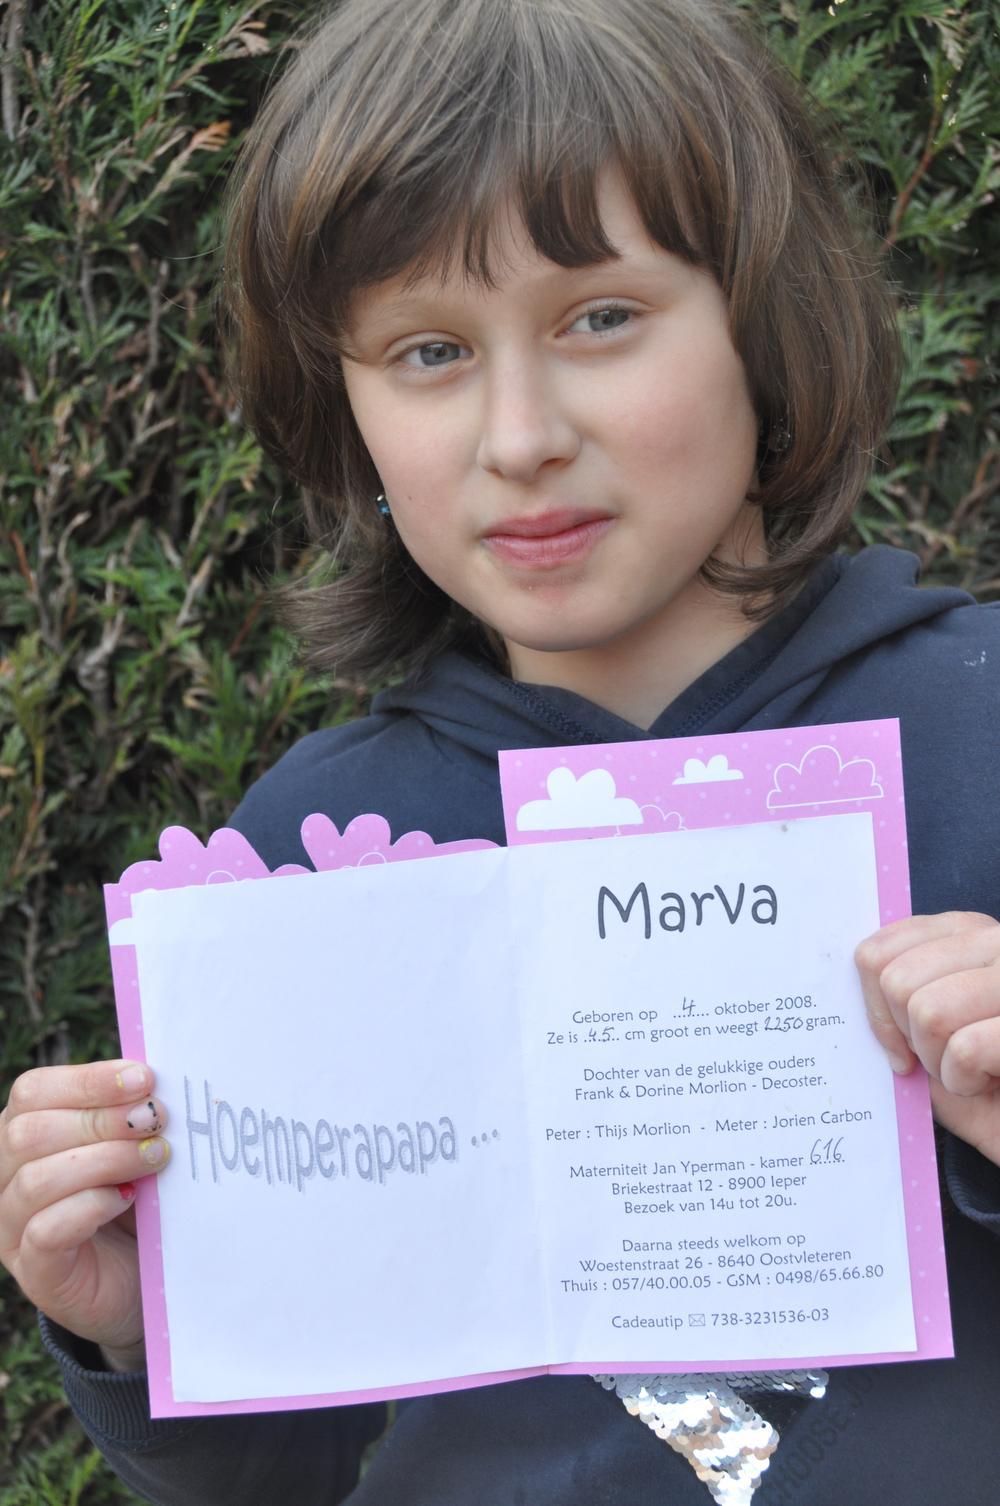 De grootste hit van Marva 'Oempalapapero' vormde zelfs de inspiratie voor het geboortekaartje van Marva Ida Clara Morlion. (Foto RV)